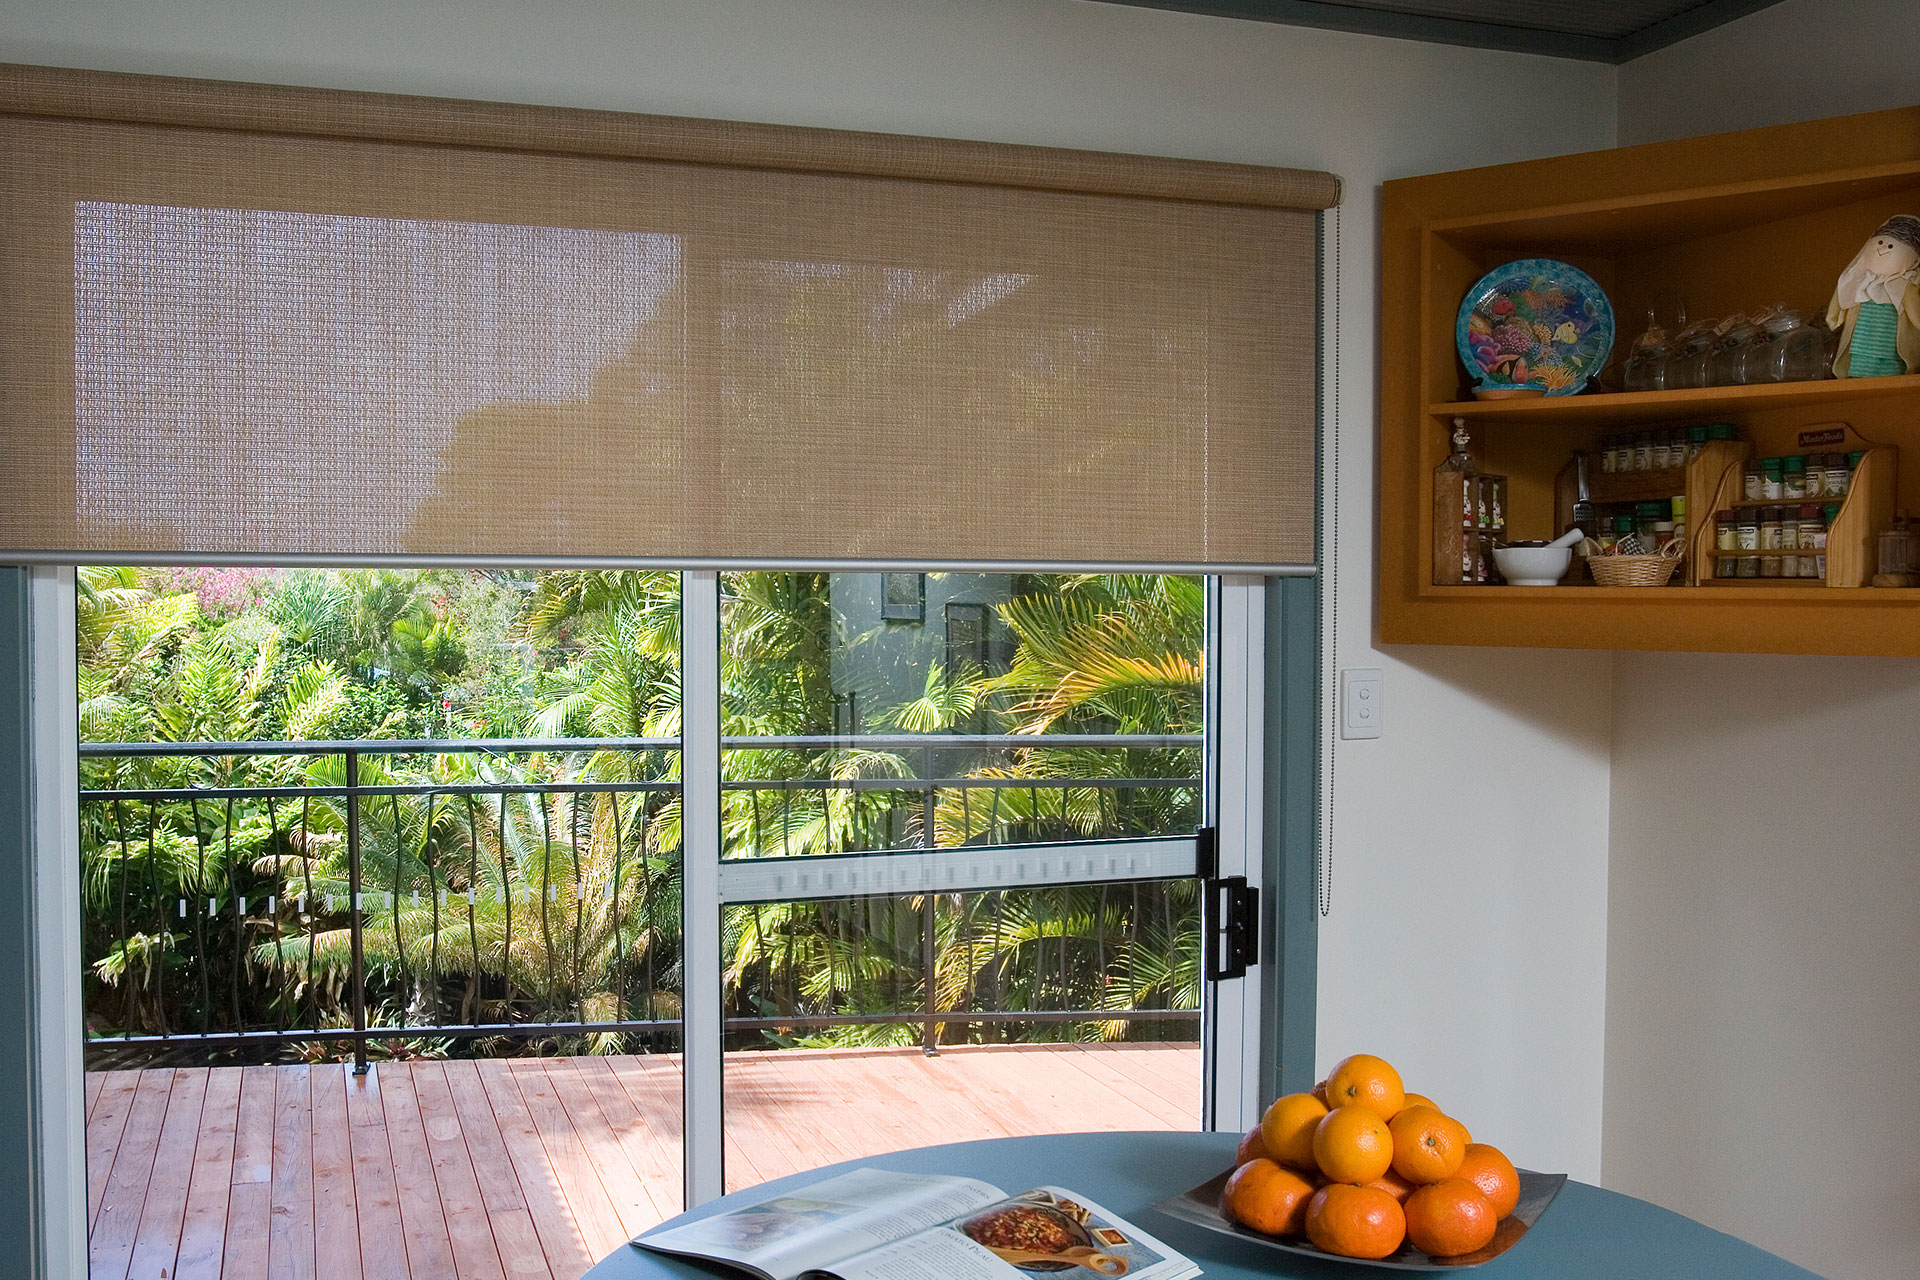 Indoor blinds